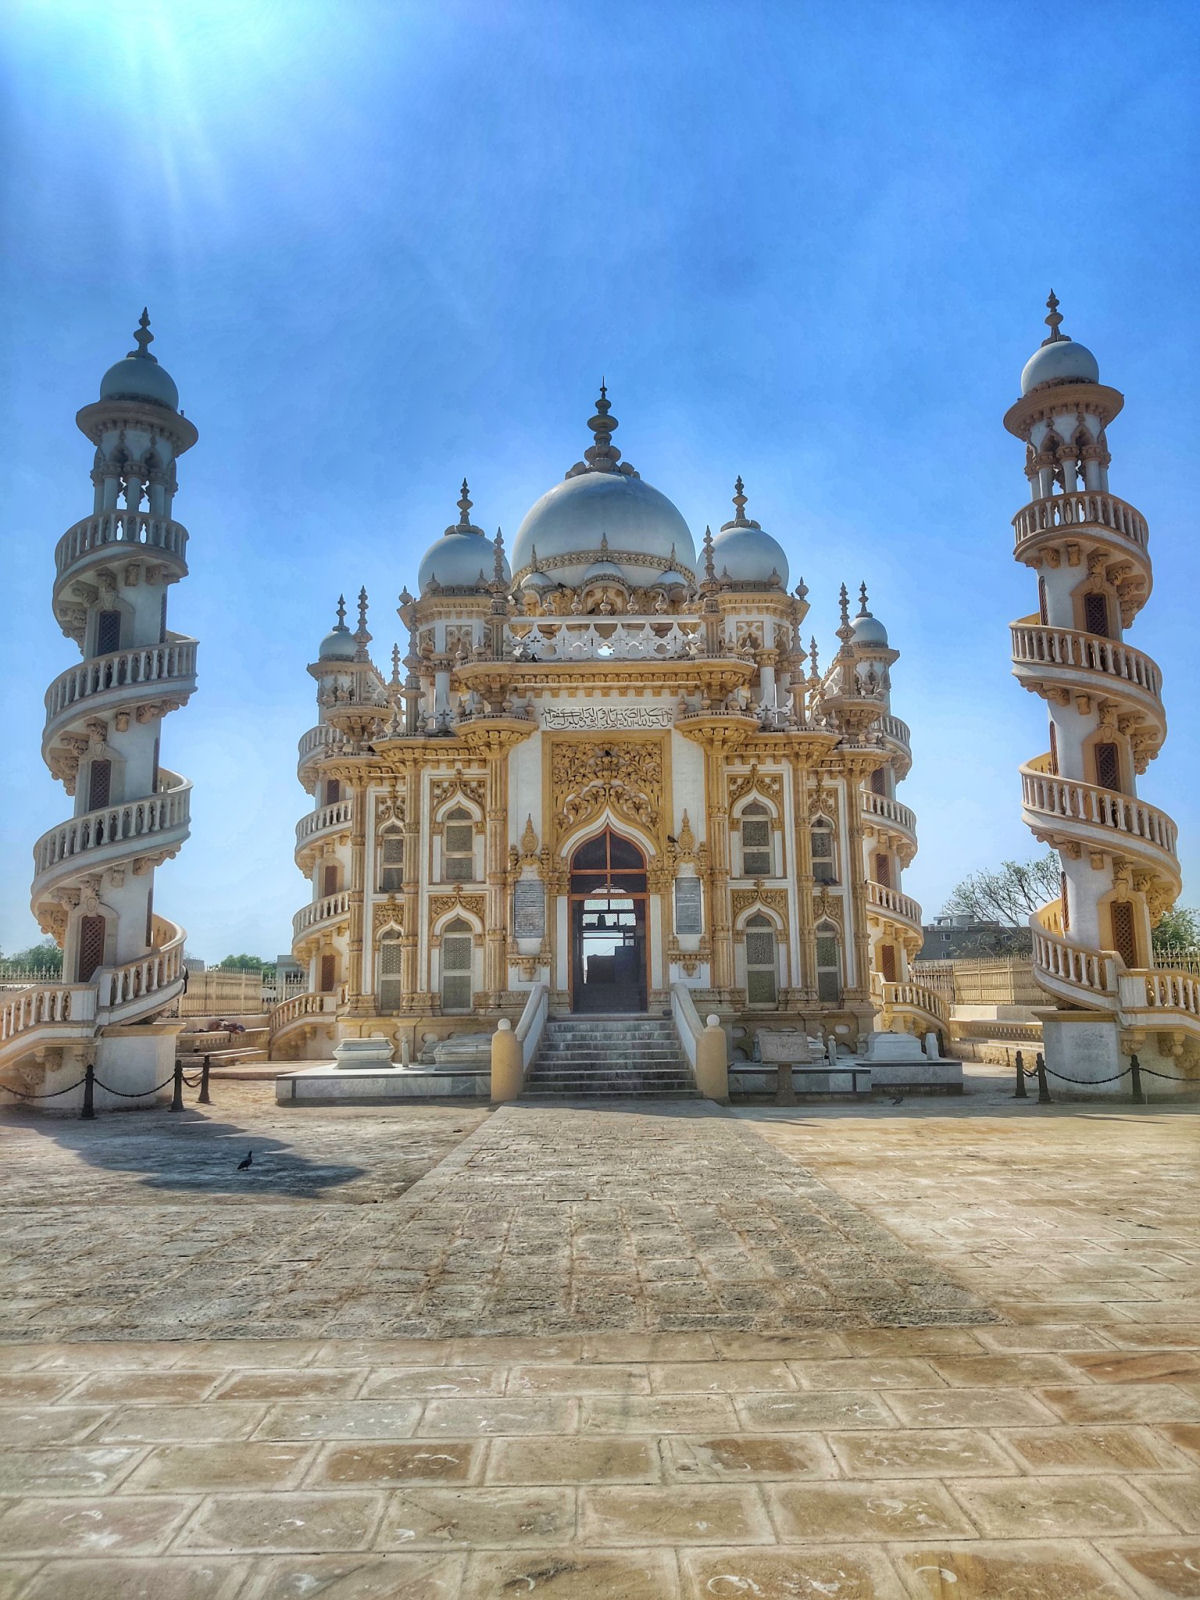 Palácio Mahabat Maqbara, um exibição requintada de arte e arquitetura